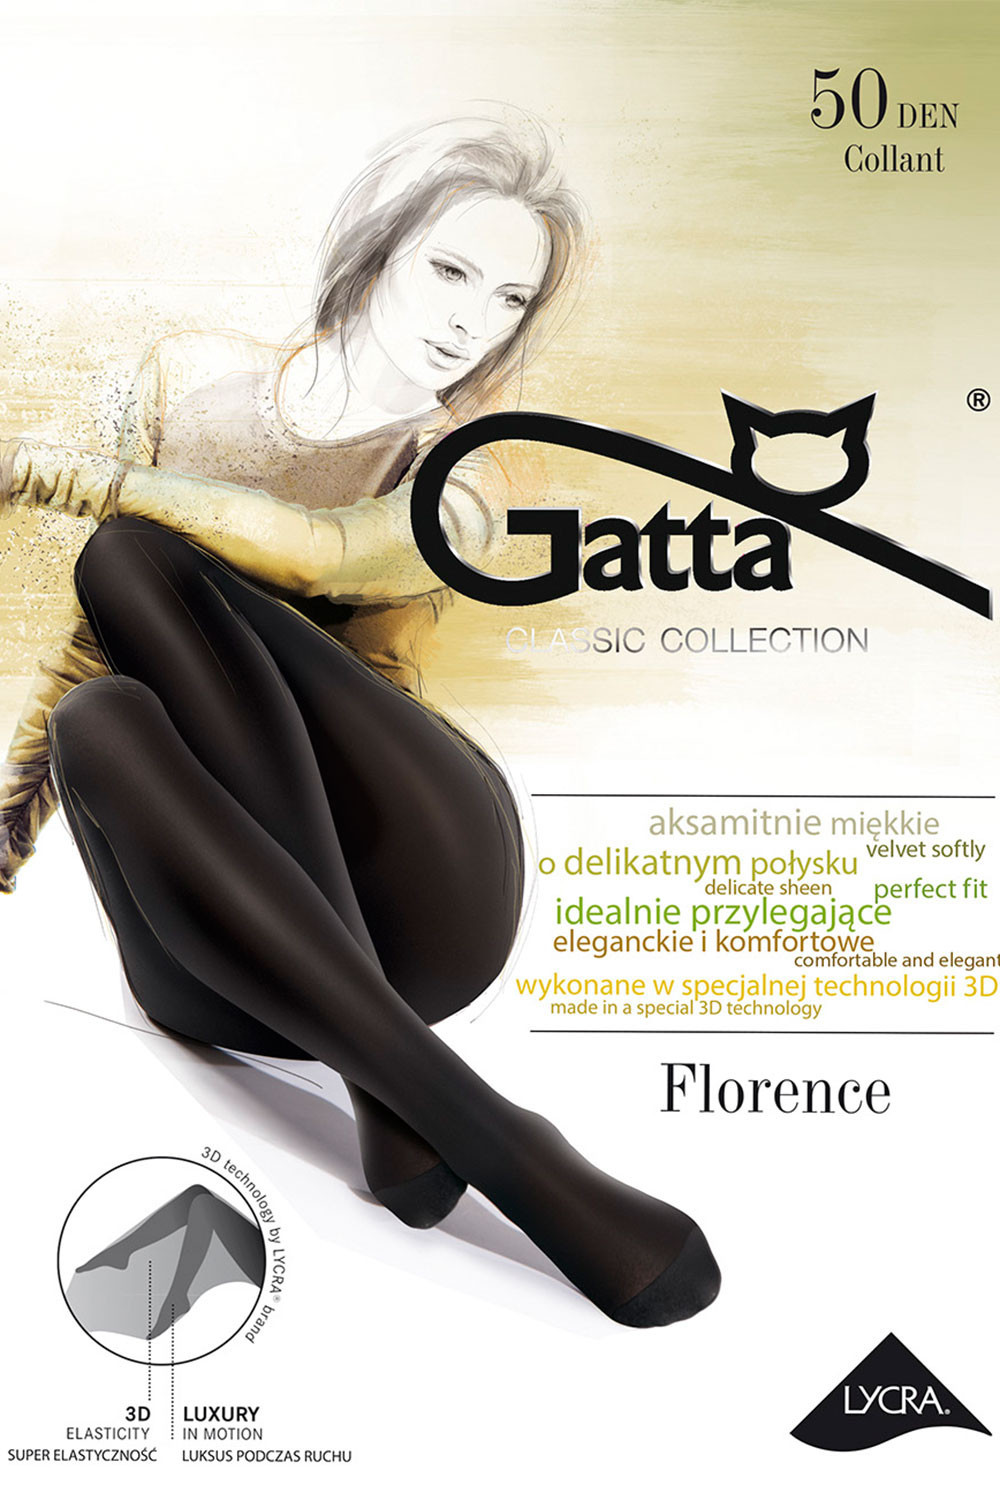 Punčochové kalhoty FLorence 50 černá -Gatta 4-L